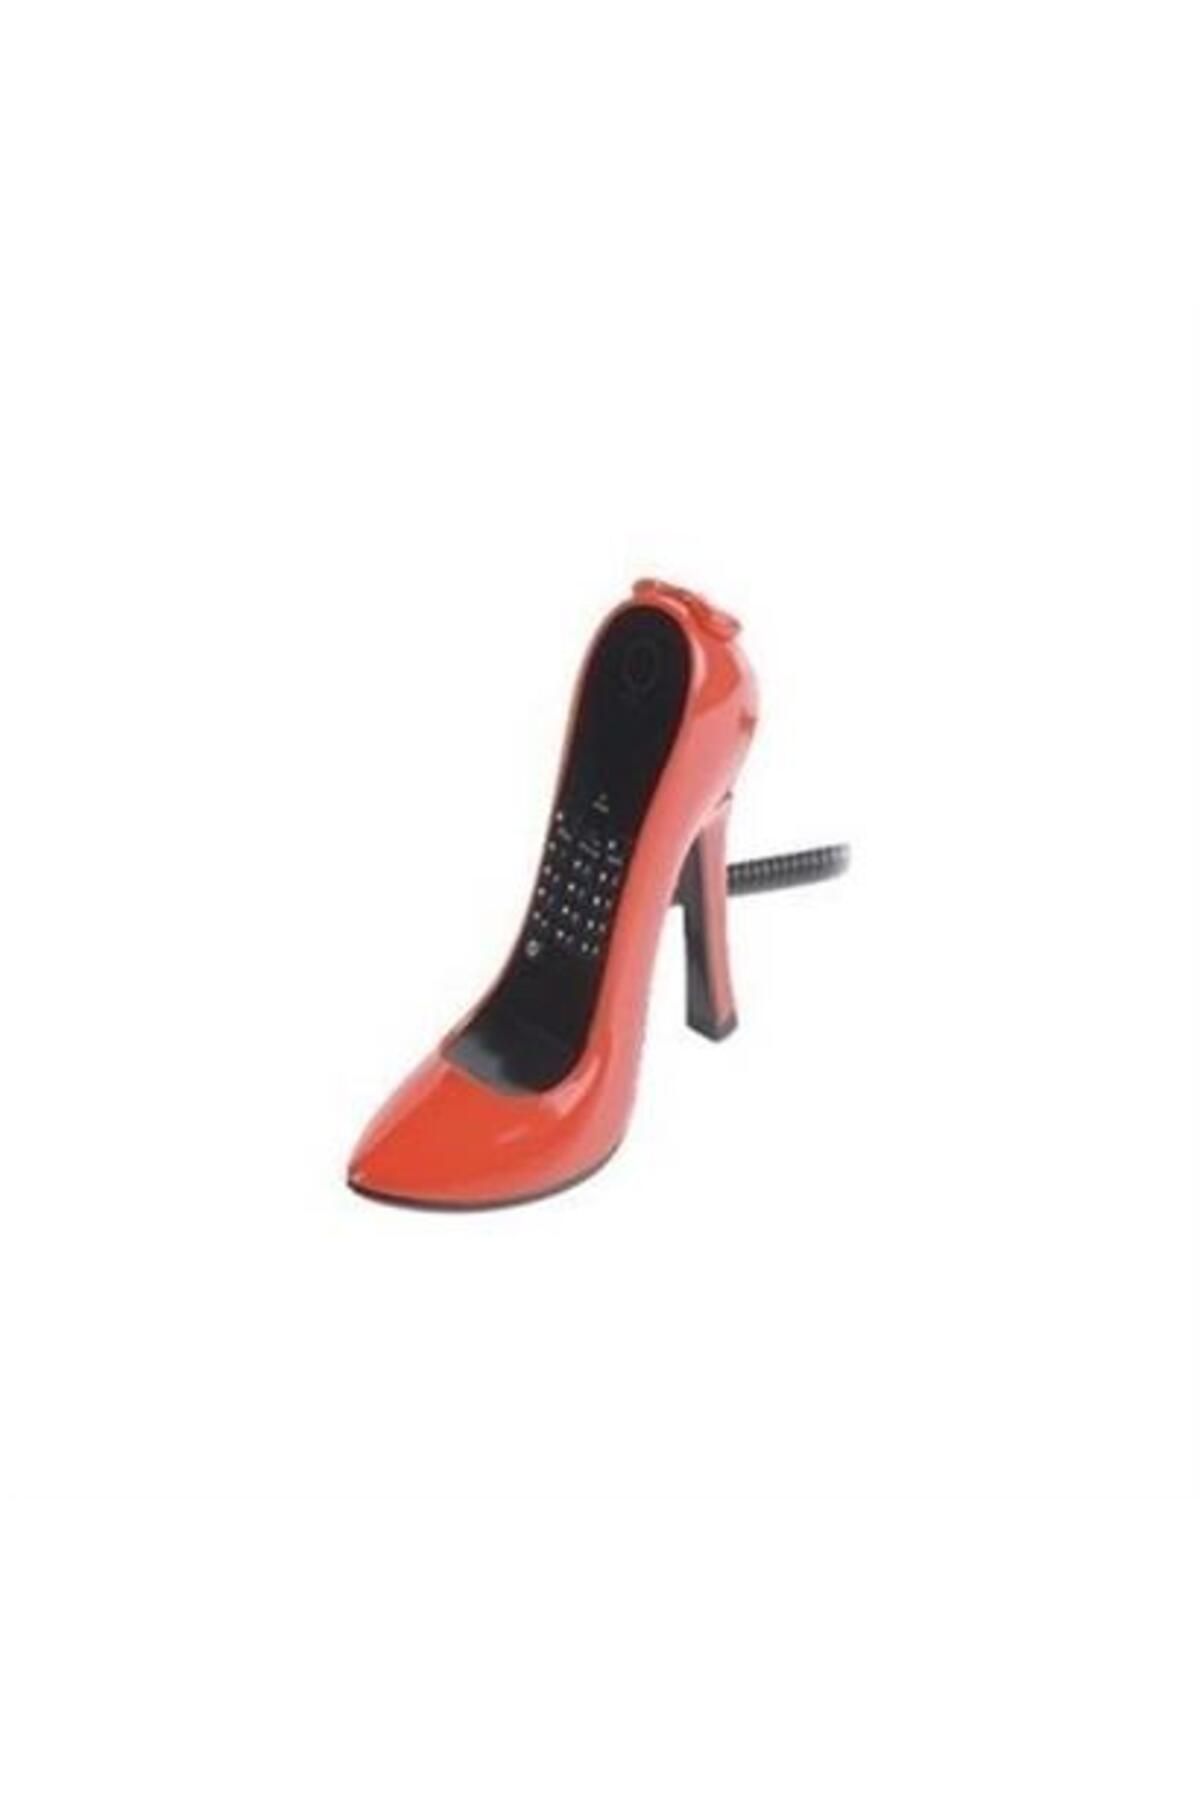 Çınar Elif Çınarcık Ys Topuklu Ayakkabı Şeklinde Masaüstü İlginç Dekoratif Ev Telefonu